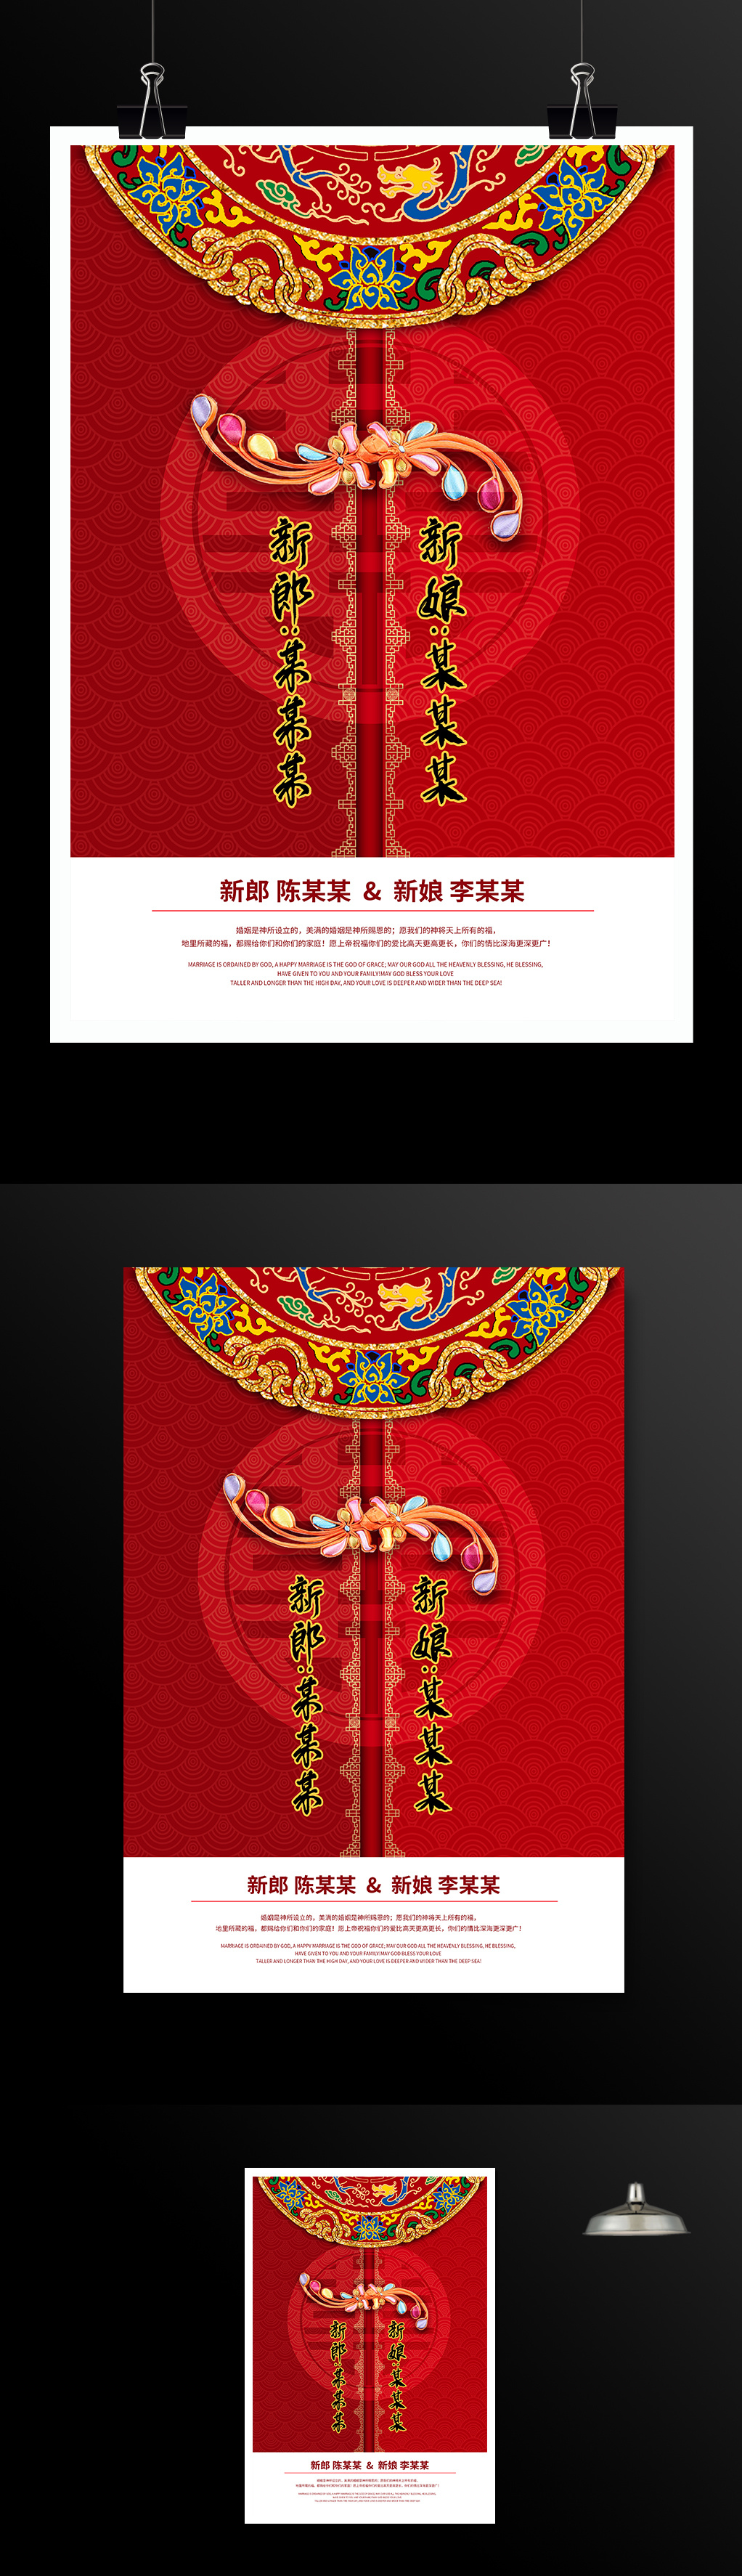 中国红盘扣婚礼婚庆海报